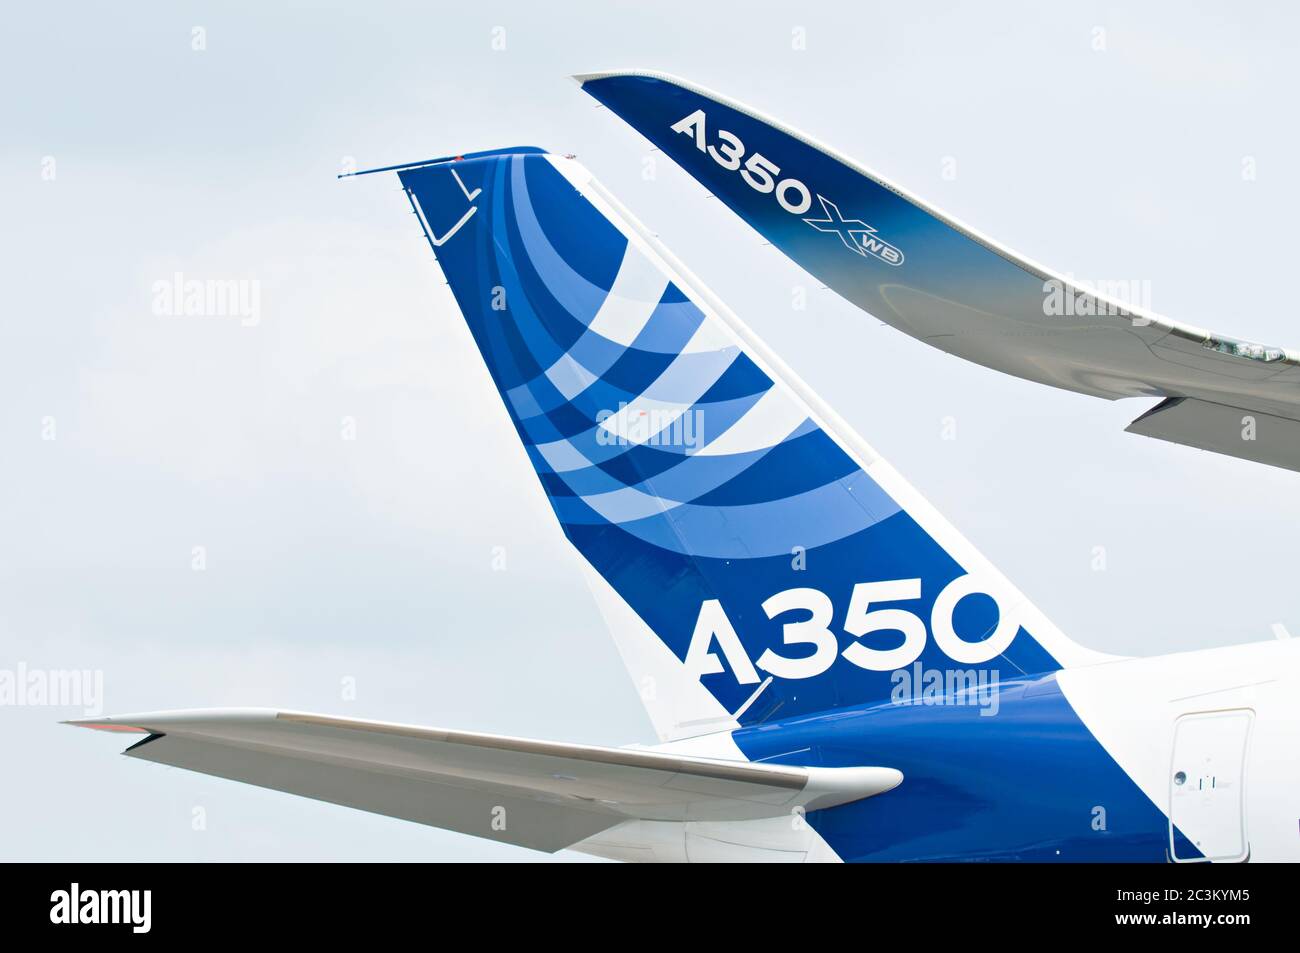 SINGAPORE - FEBBRAIO 11: Aereo di linea e alata di Airbus A350 XWB prototipo 003 al Singapore Airshow, Changi Exhibition Centre a Singapore il prossimo febbraio Foto Stock